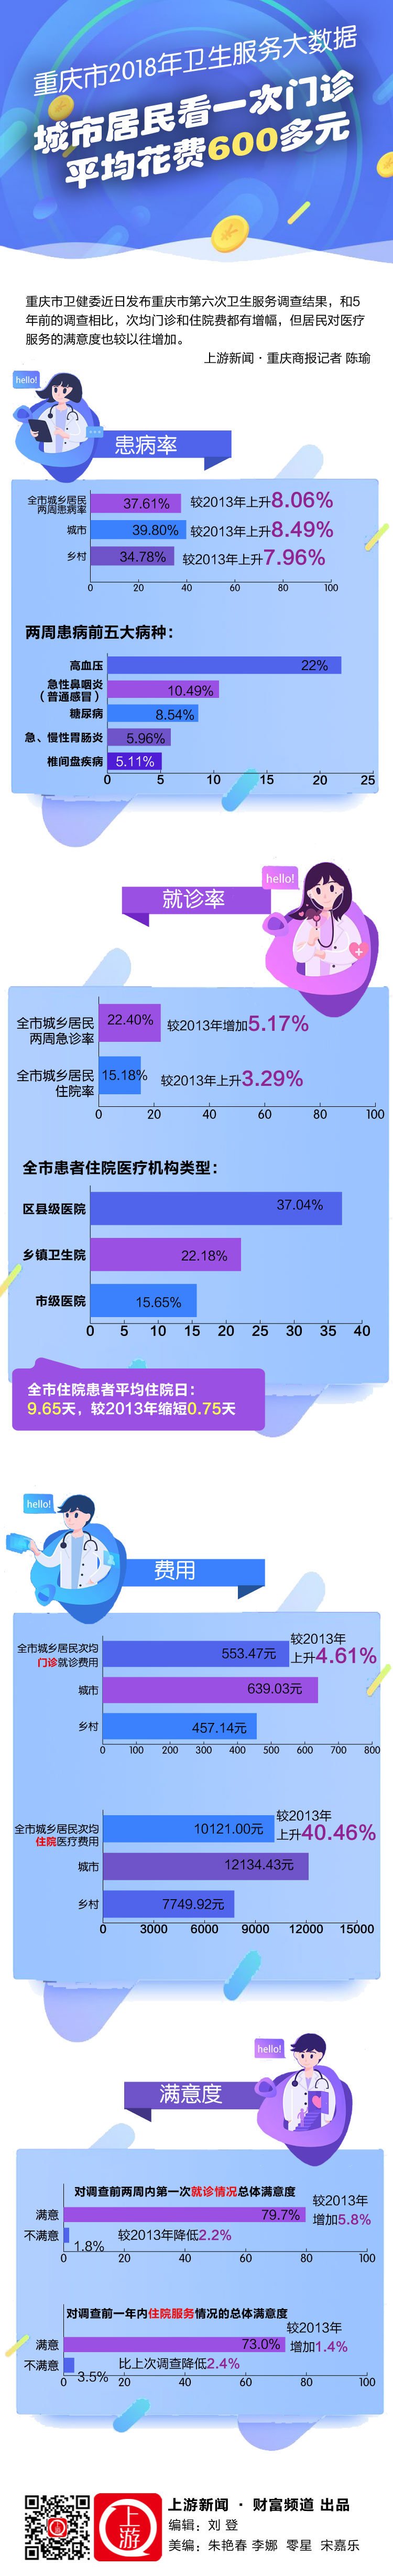 一图流｜重庆市2018年卫生服务大数据：城市居民看一次门诊平均花费600多元.jpg